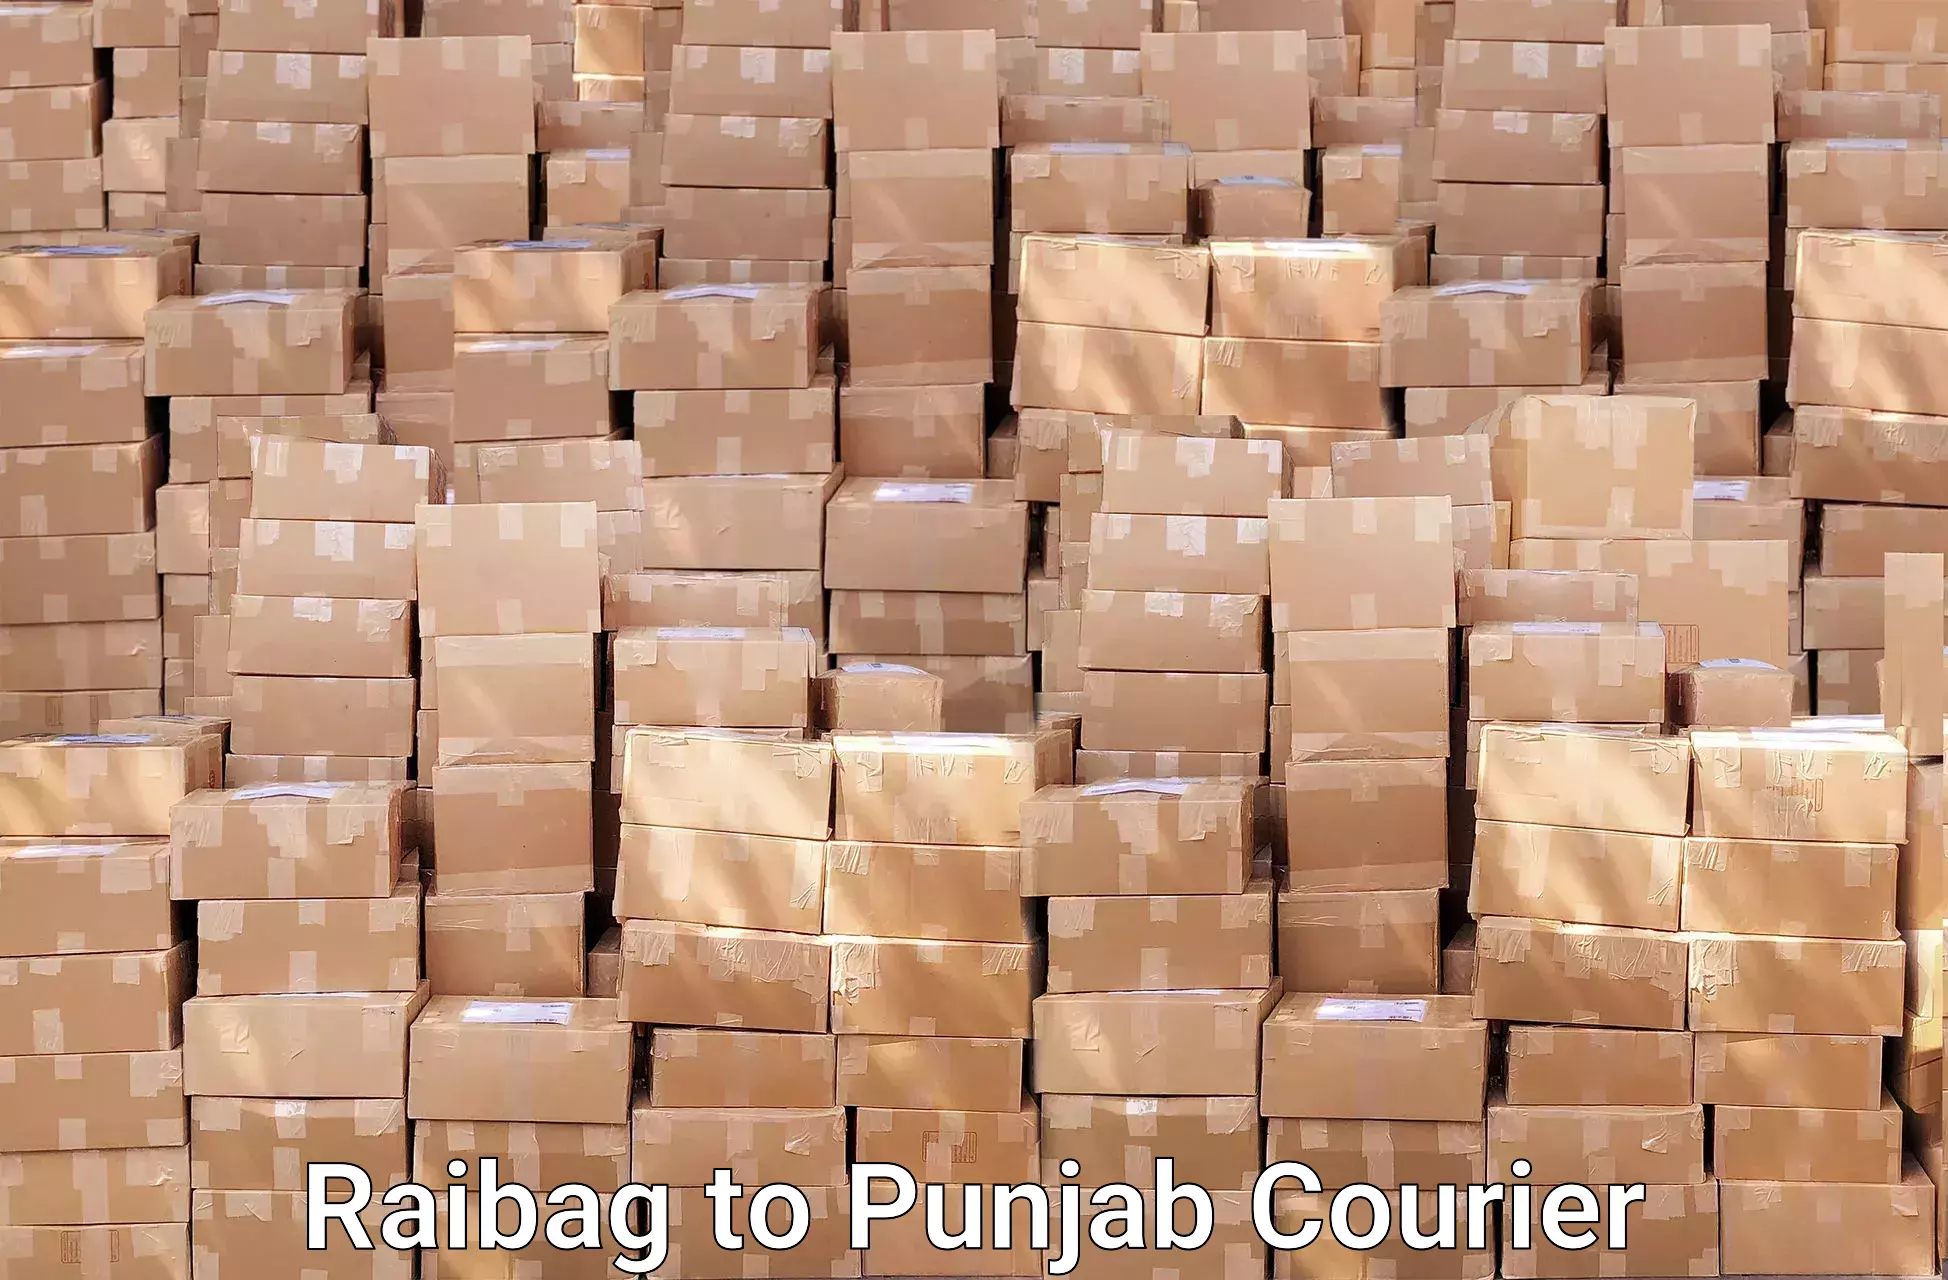 Furniture transport service Raibag to Punjab